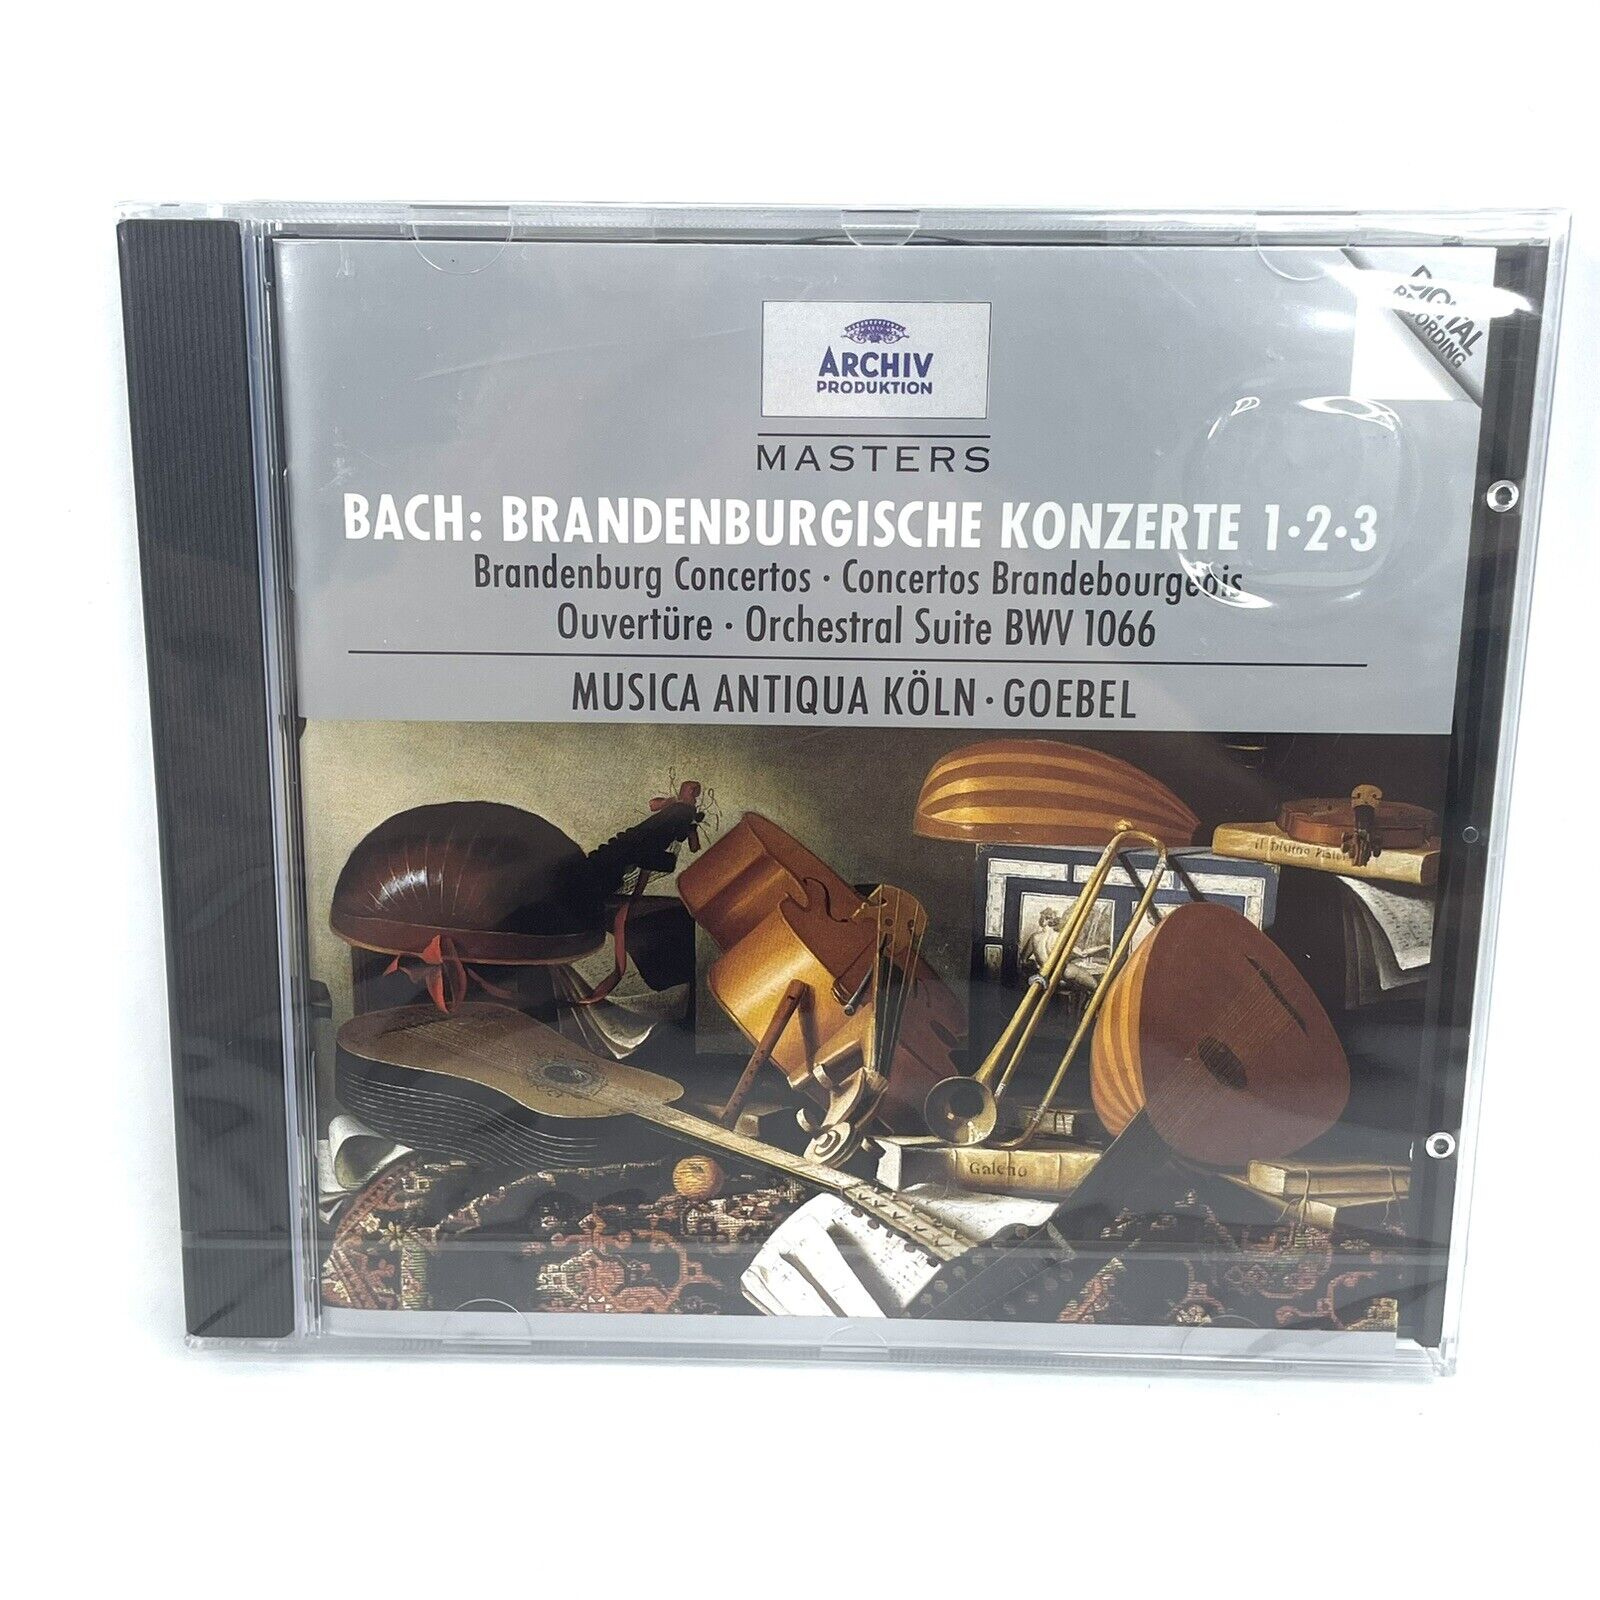 BACH Brandenburgische Konzerte 1 2 3 Musica Antiqua Köln Reinhard Goebel CD